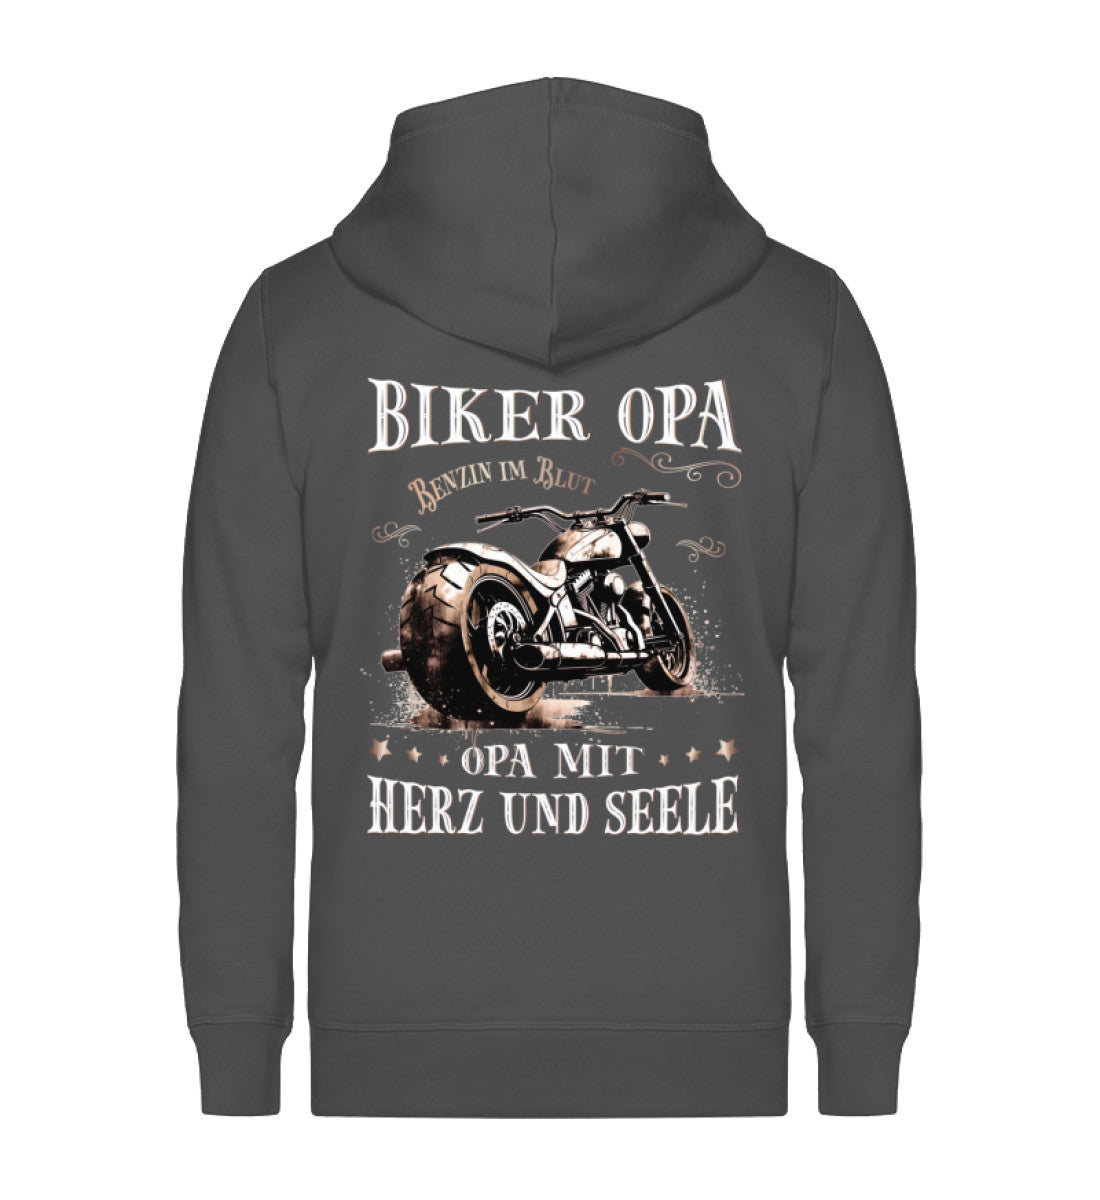 Eine Reißverschluss-Jacke für Motorradfahrer von Wingbikers mit dem Aufdruck, Biker Opa - Benzin im Blut - Opa mit Herz und Seele, in dunkelgrau.